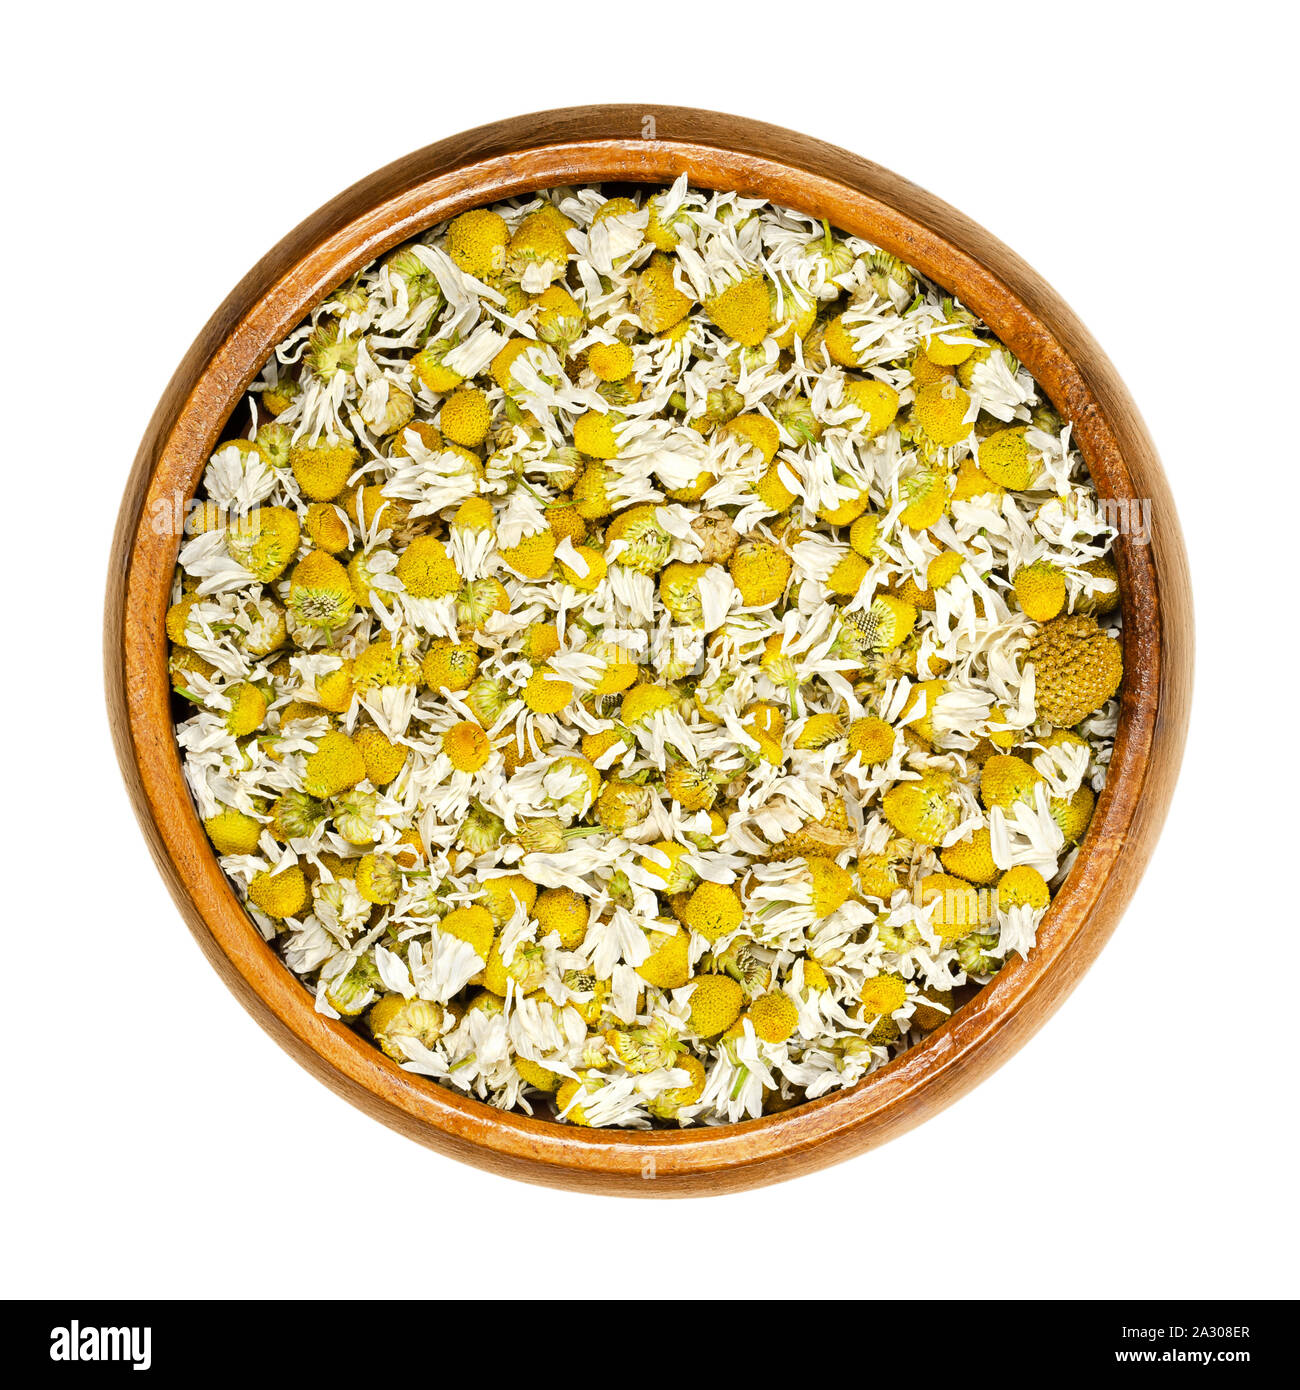 Fleurs de camomille séchées dans un bol en bois. Camomille, fleurs de Matricaria chamomilla, utilisé pour des infusions et en médecine traditionnelle. Banque D'Images